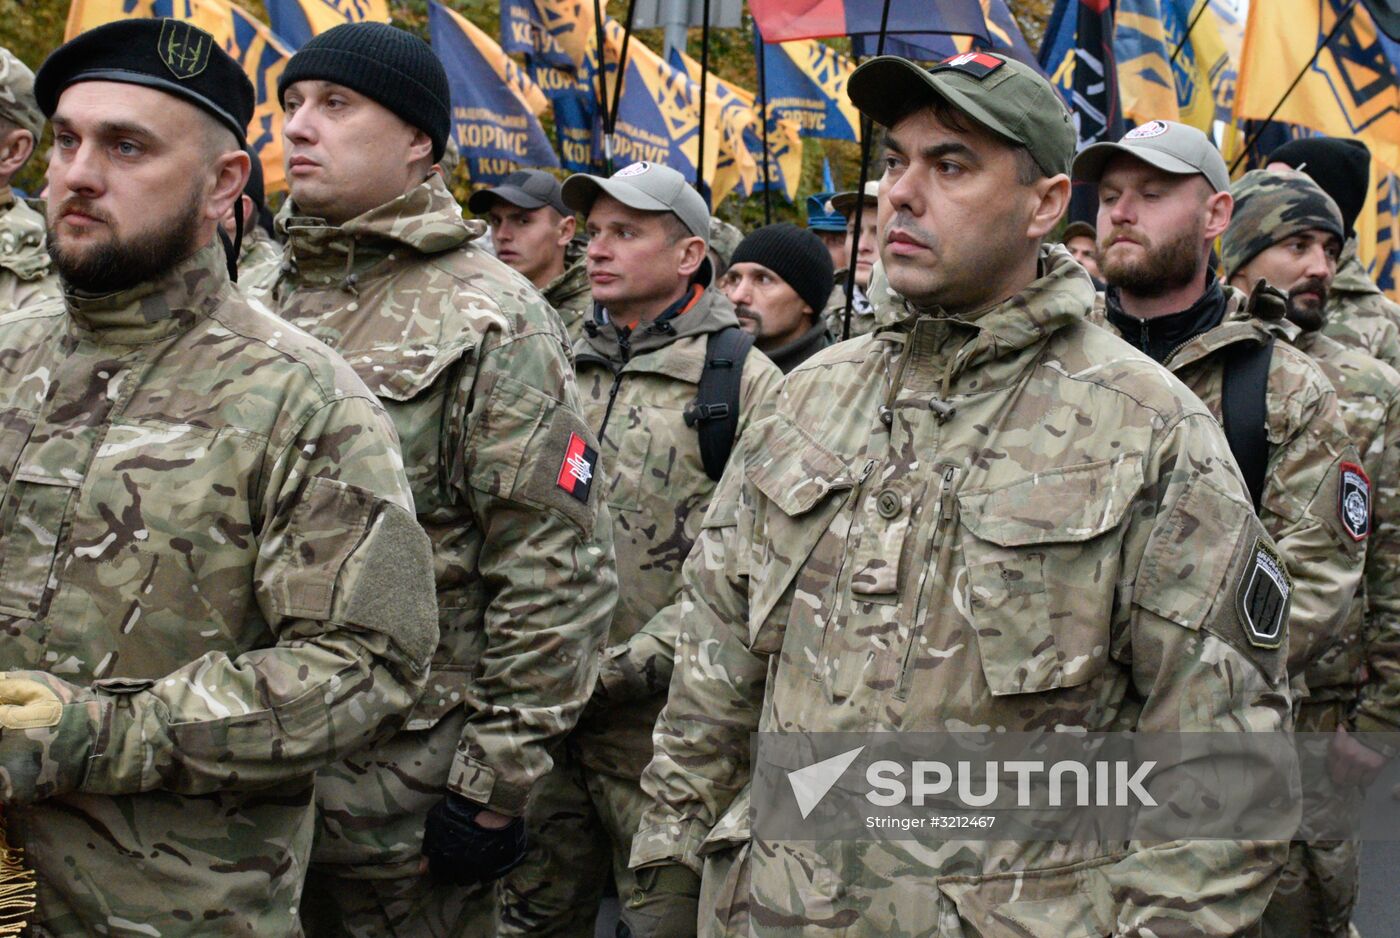 Nationalist rallies in Ukraine